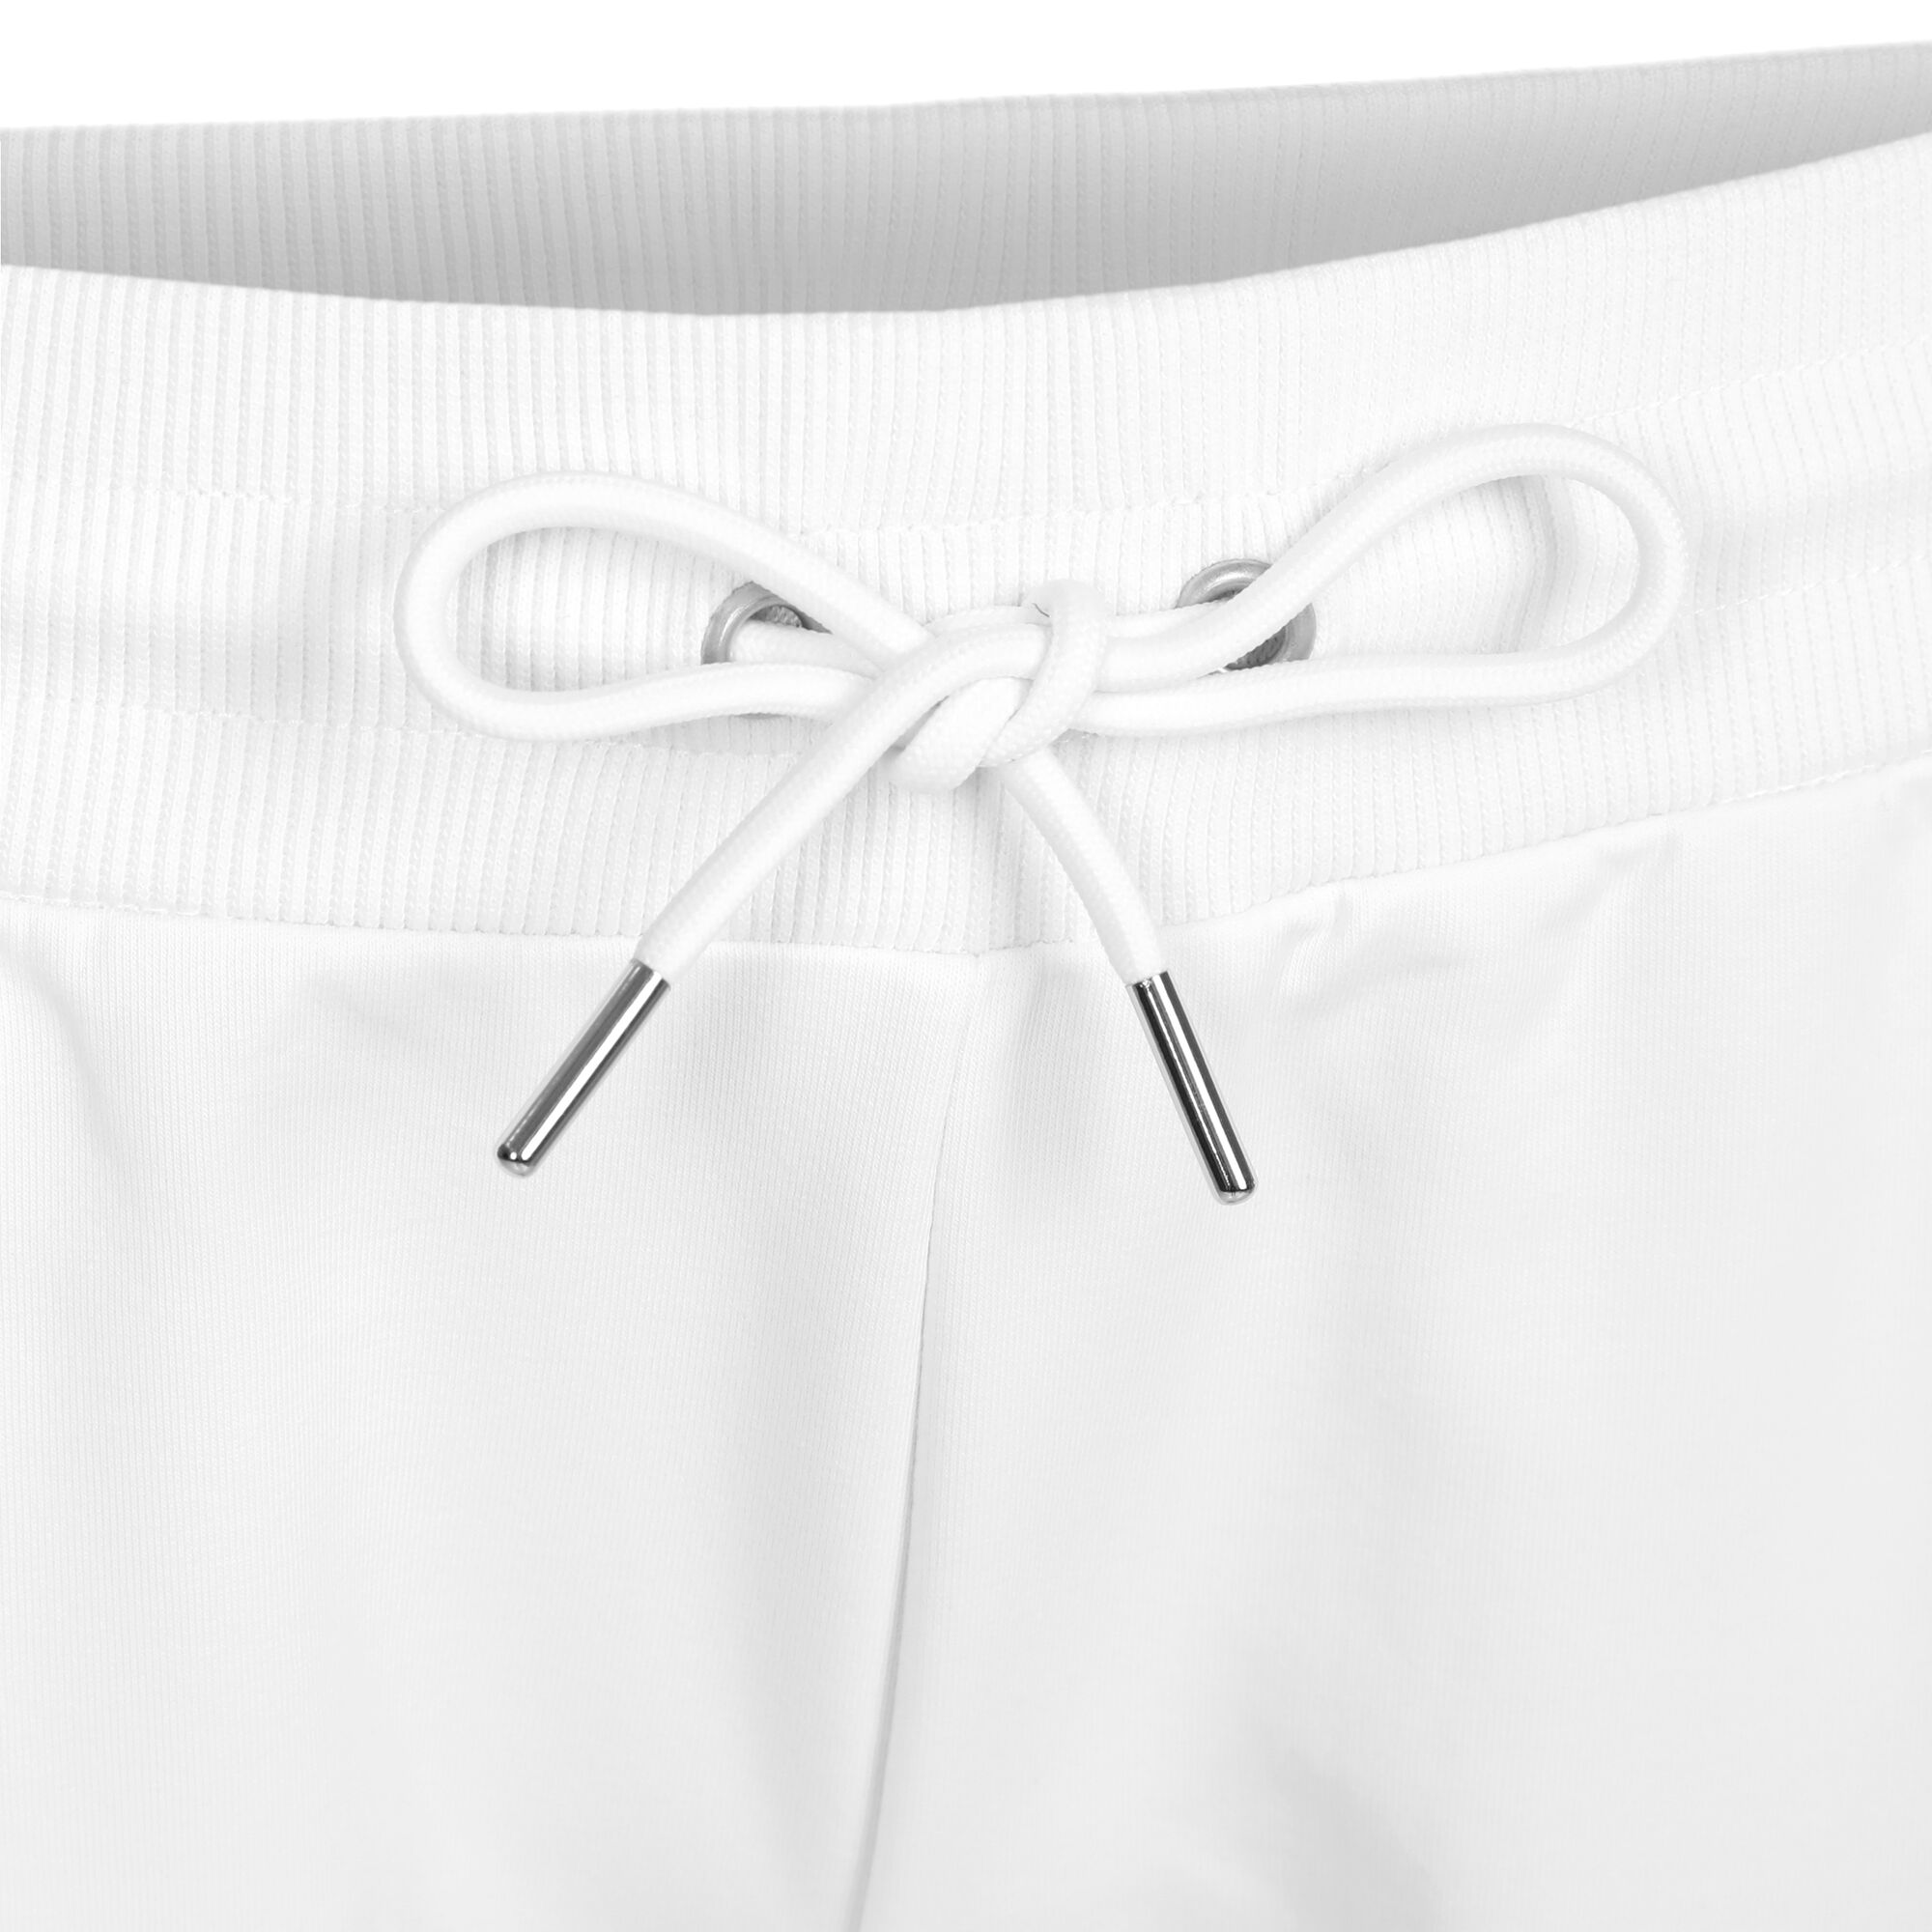 Fila Ida Women's Tennis Pants White 